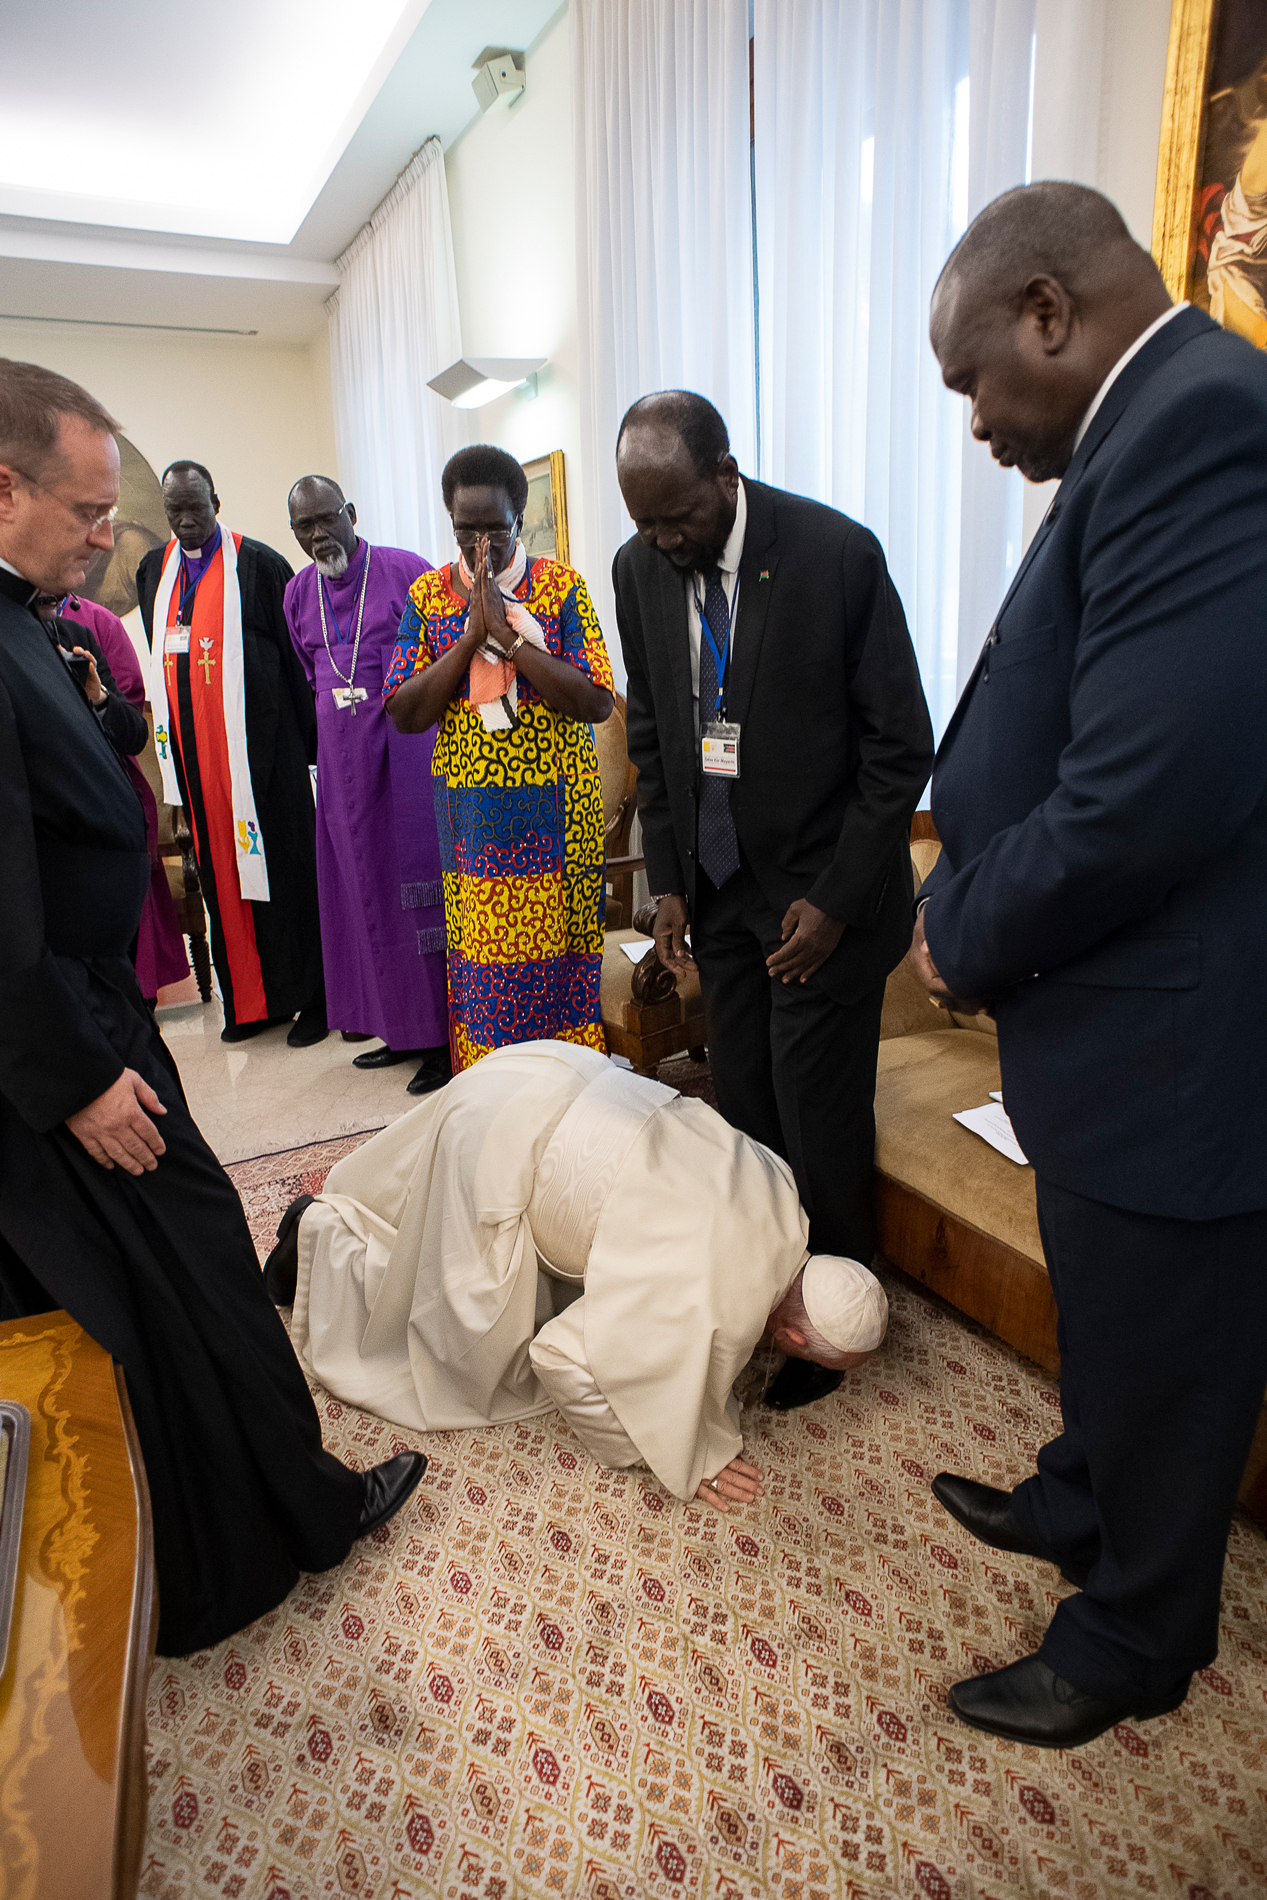 Le pape à genoux devant les leaders du Soudan du Sud © Vatican Media